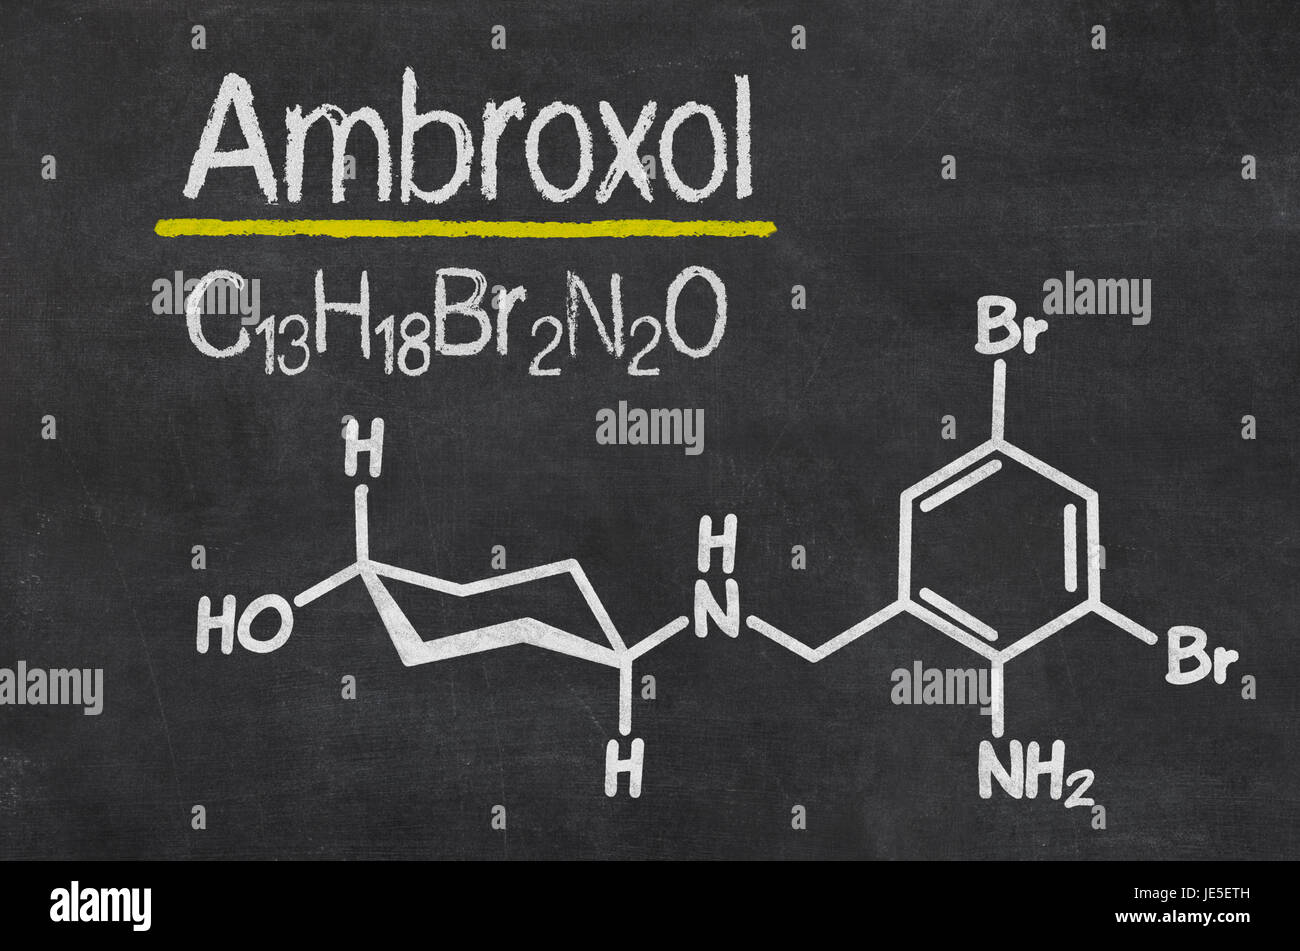 Schiefertafel mit der chemischen Formel von Ambroxol Stock Photo